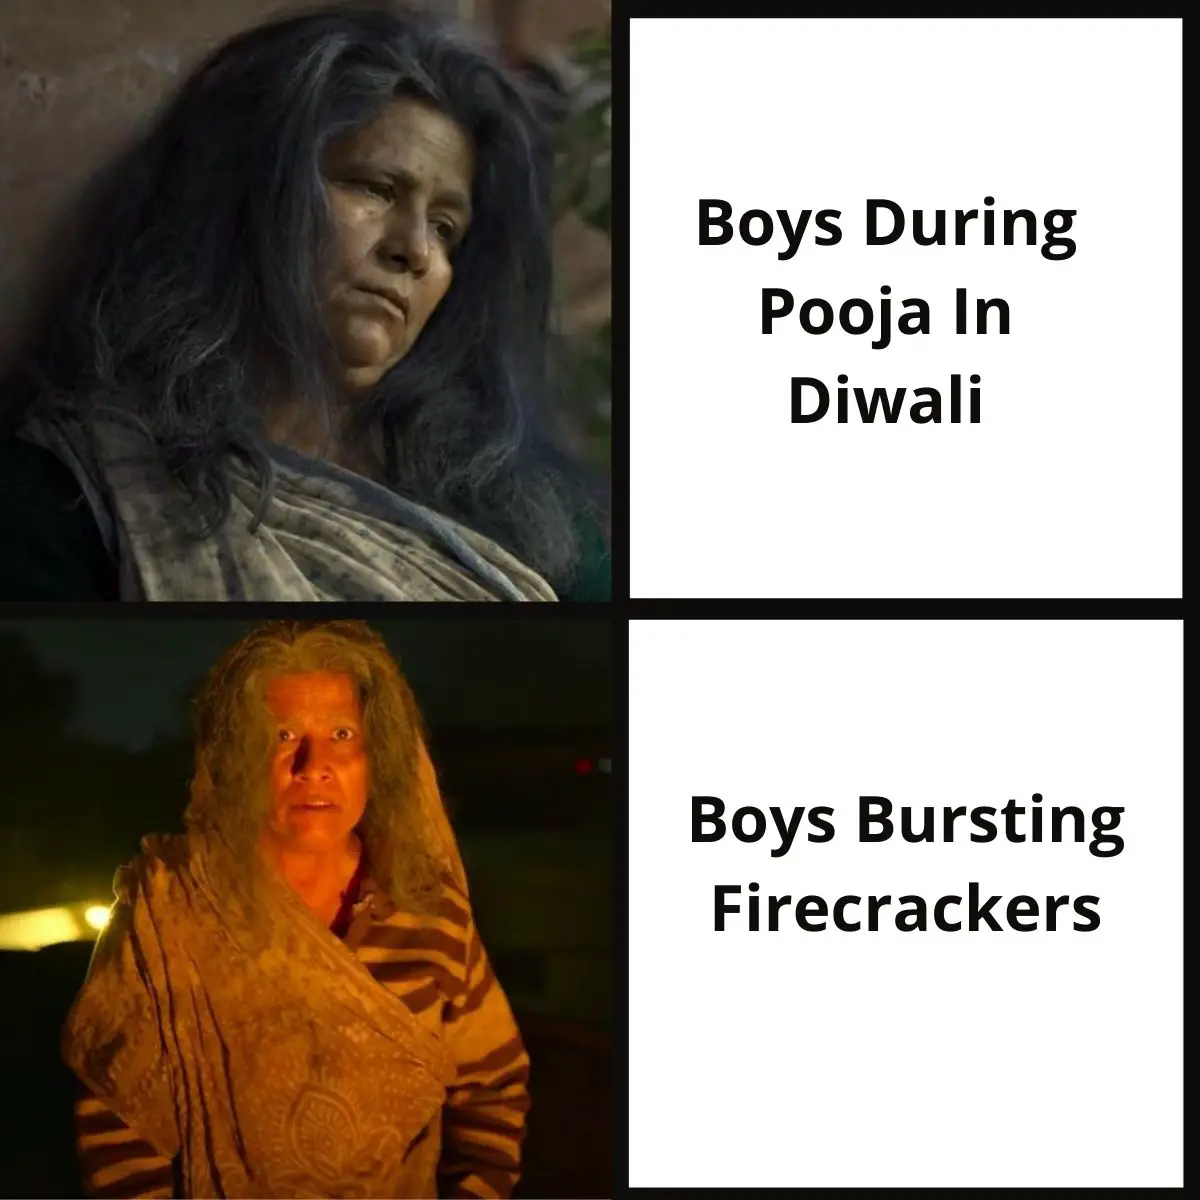 Raat Akeli Hai Meme on Diwali